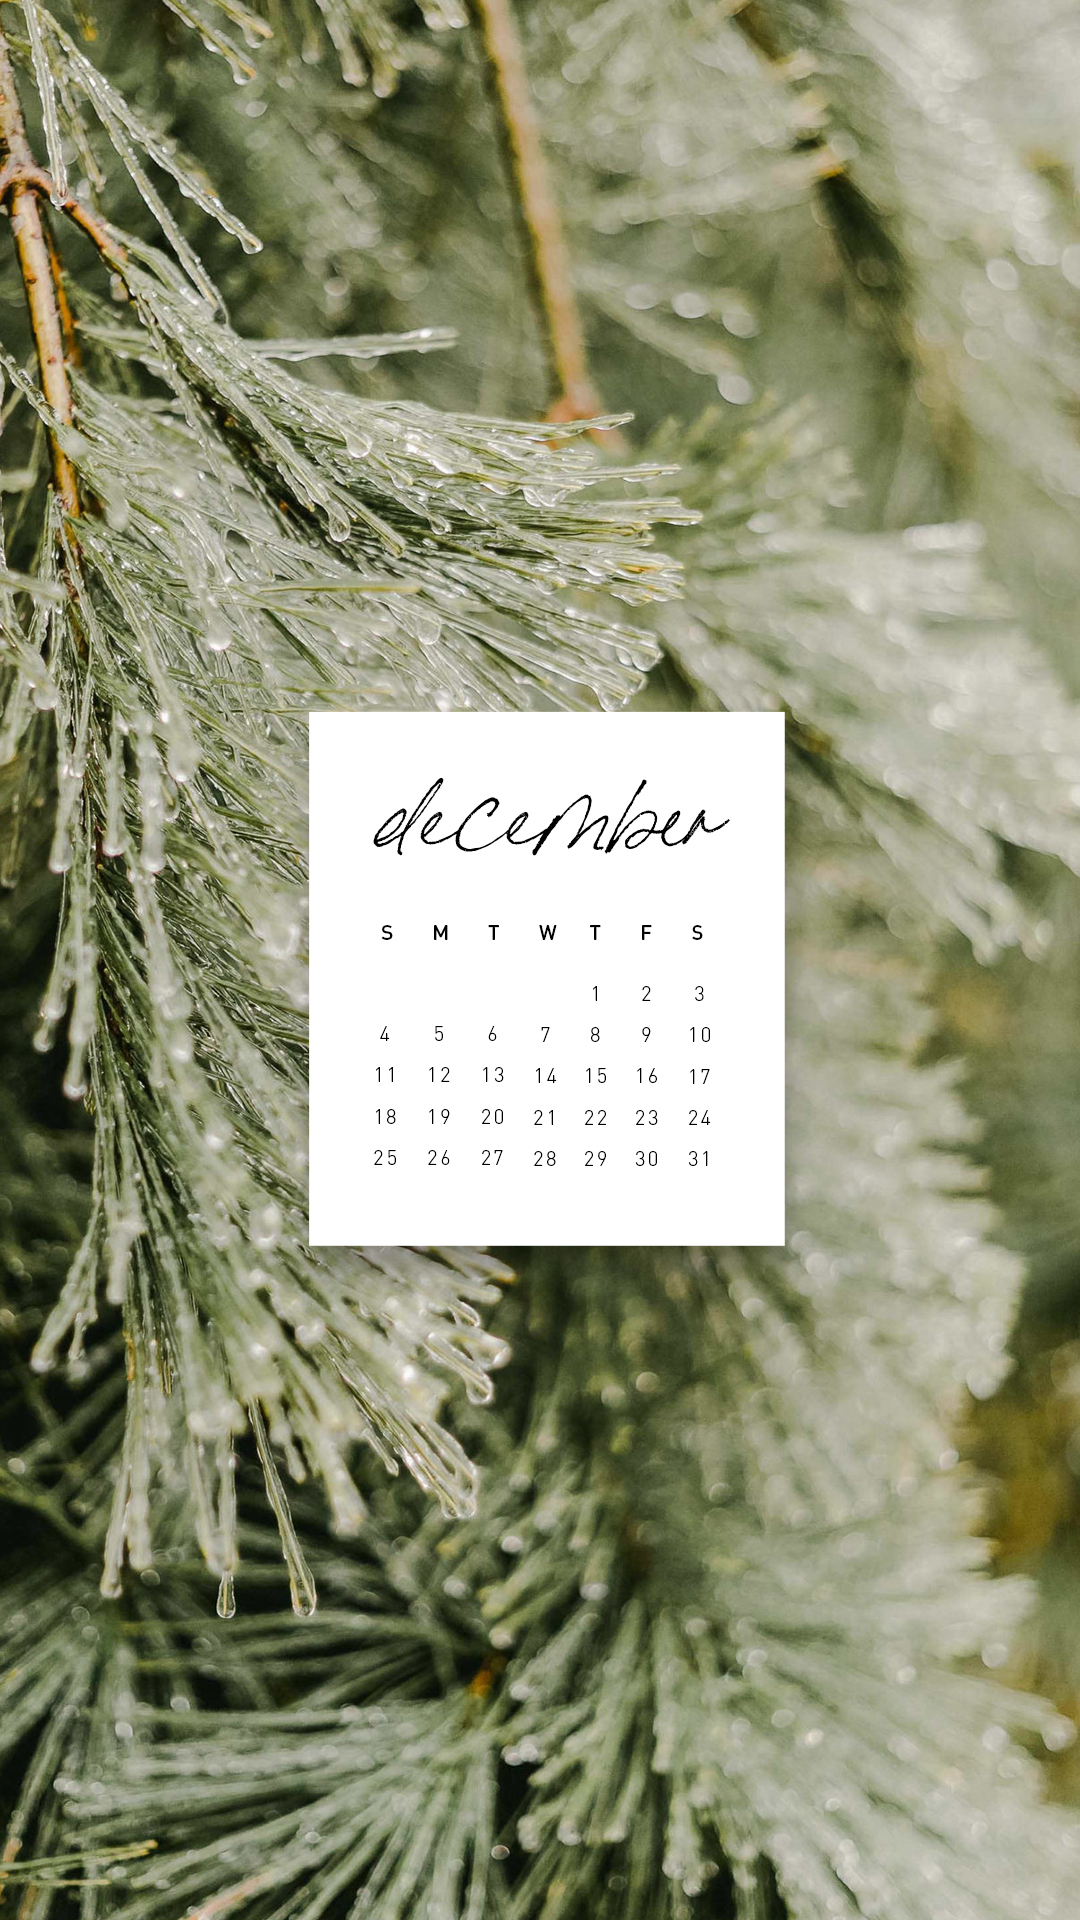 December Calendar Wallpaper - sonrisastudio.com